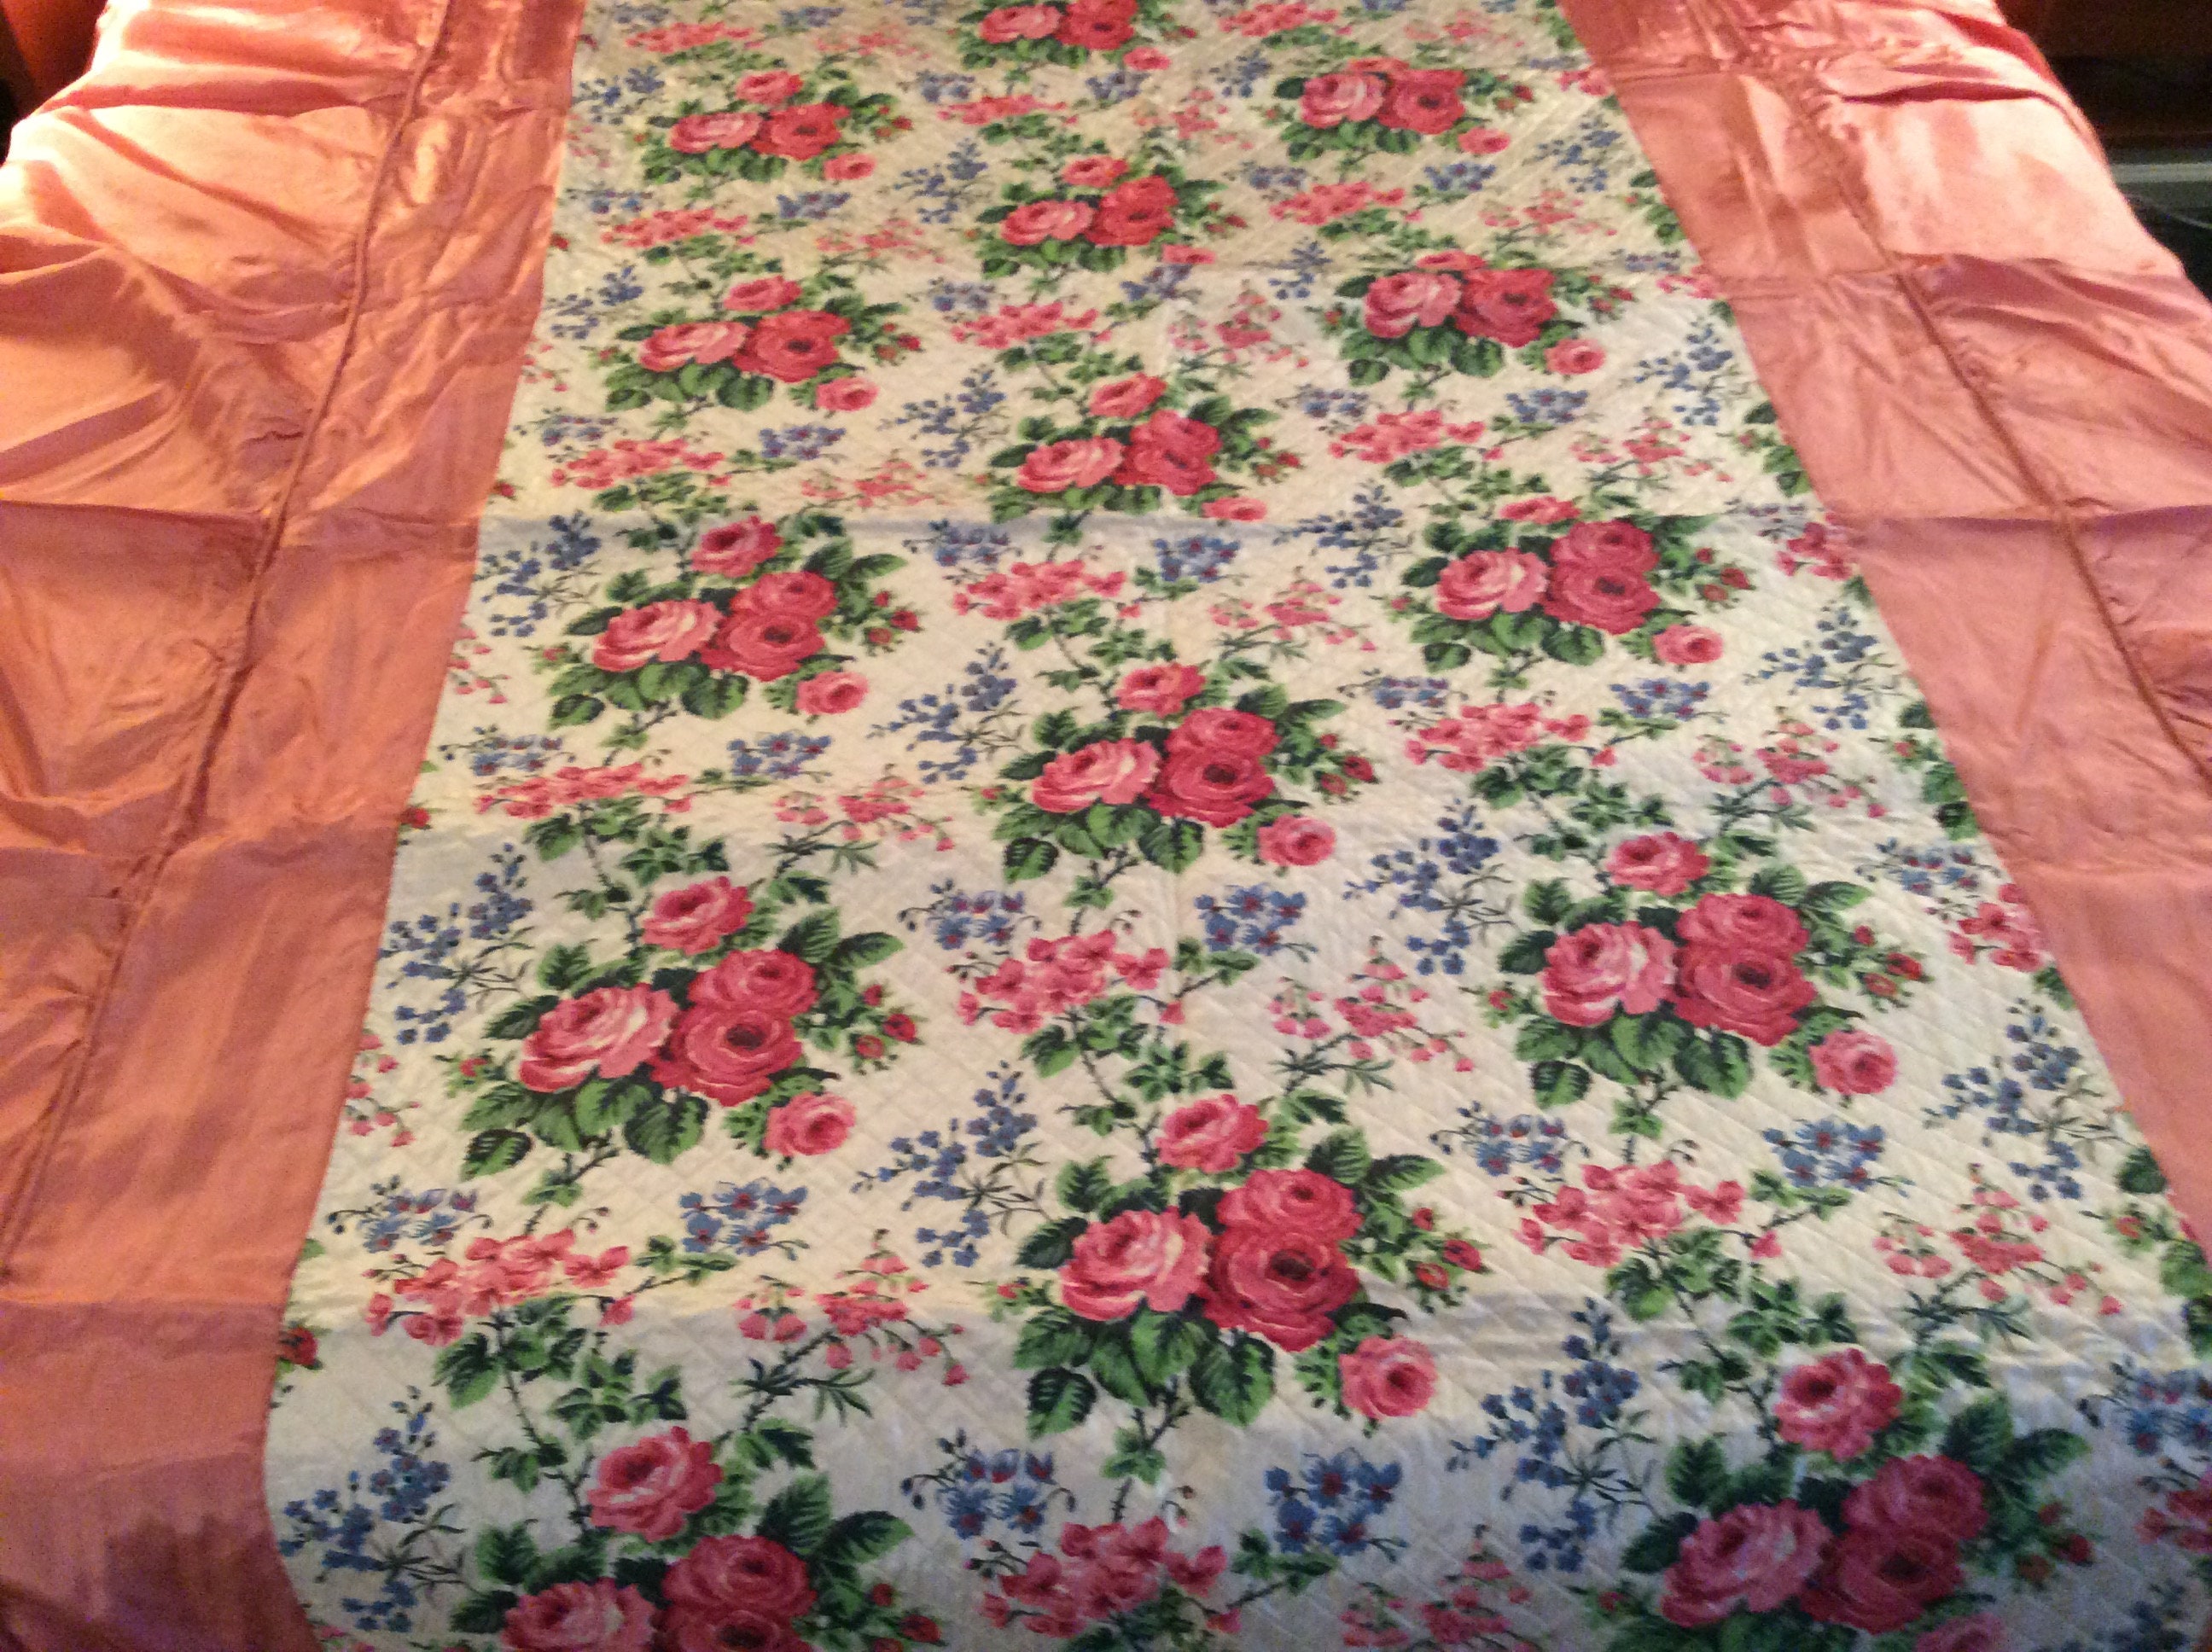 1950s Satin Bedspread and Drapes Set Pink Floral 1950s Vintage - Etsy